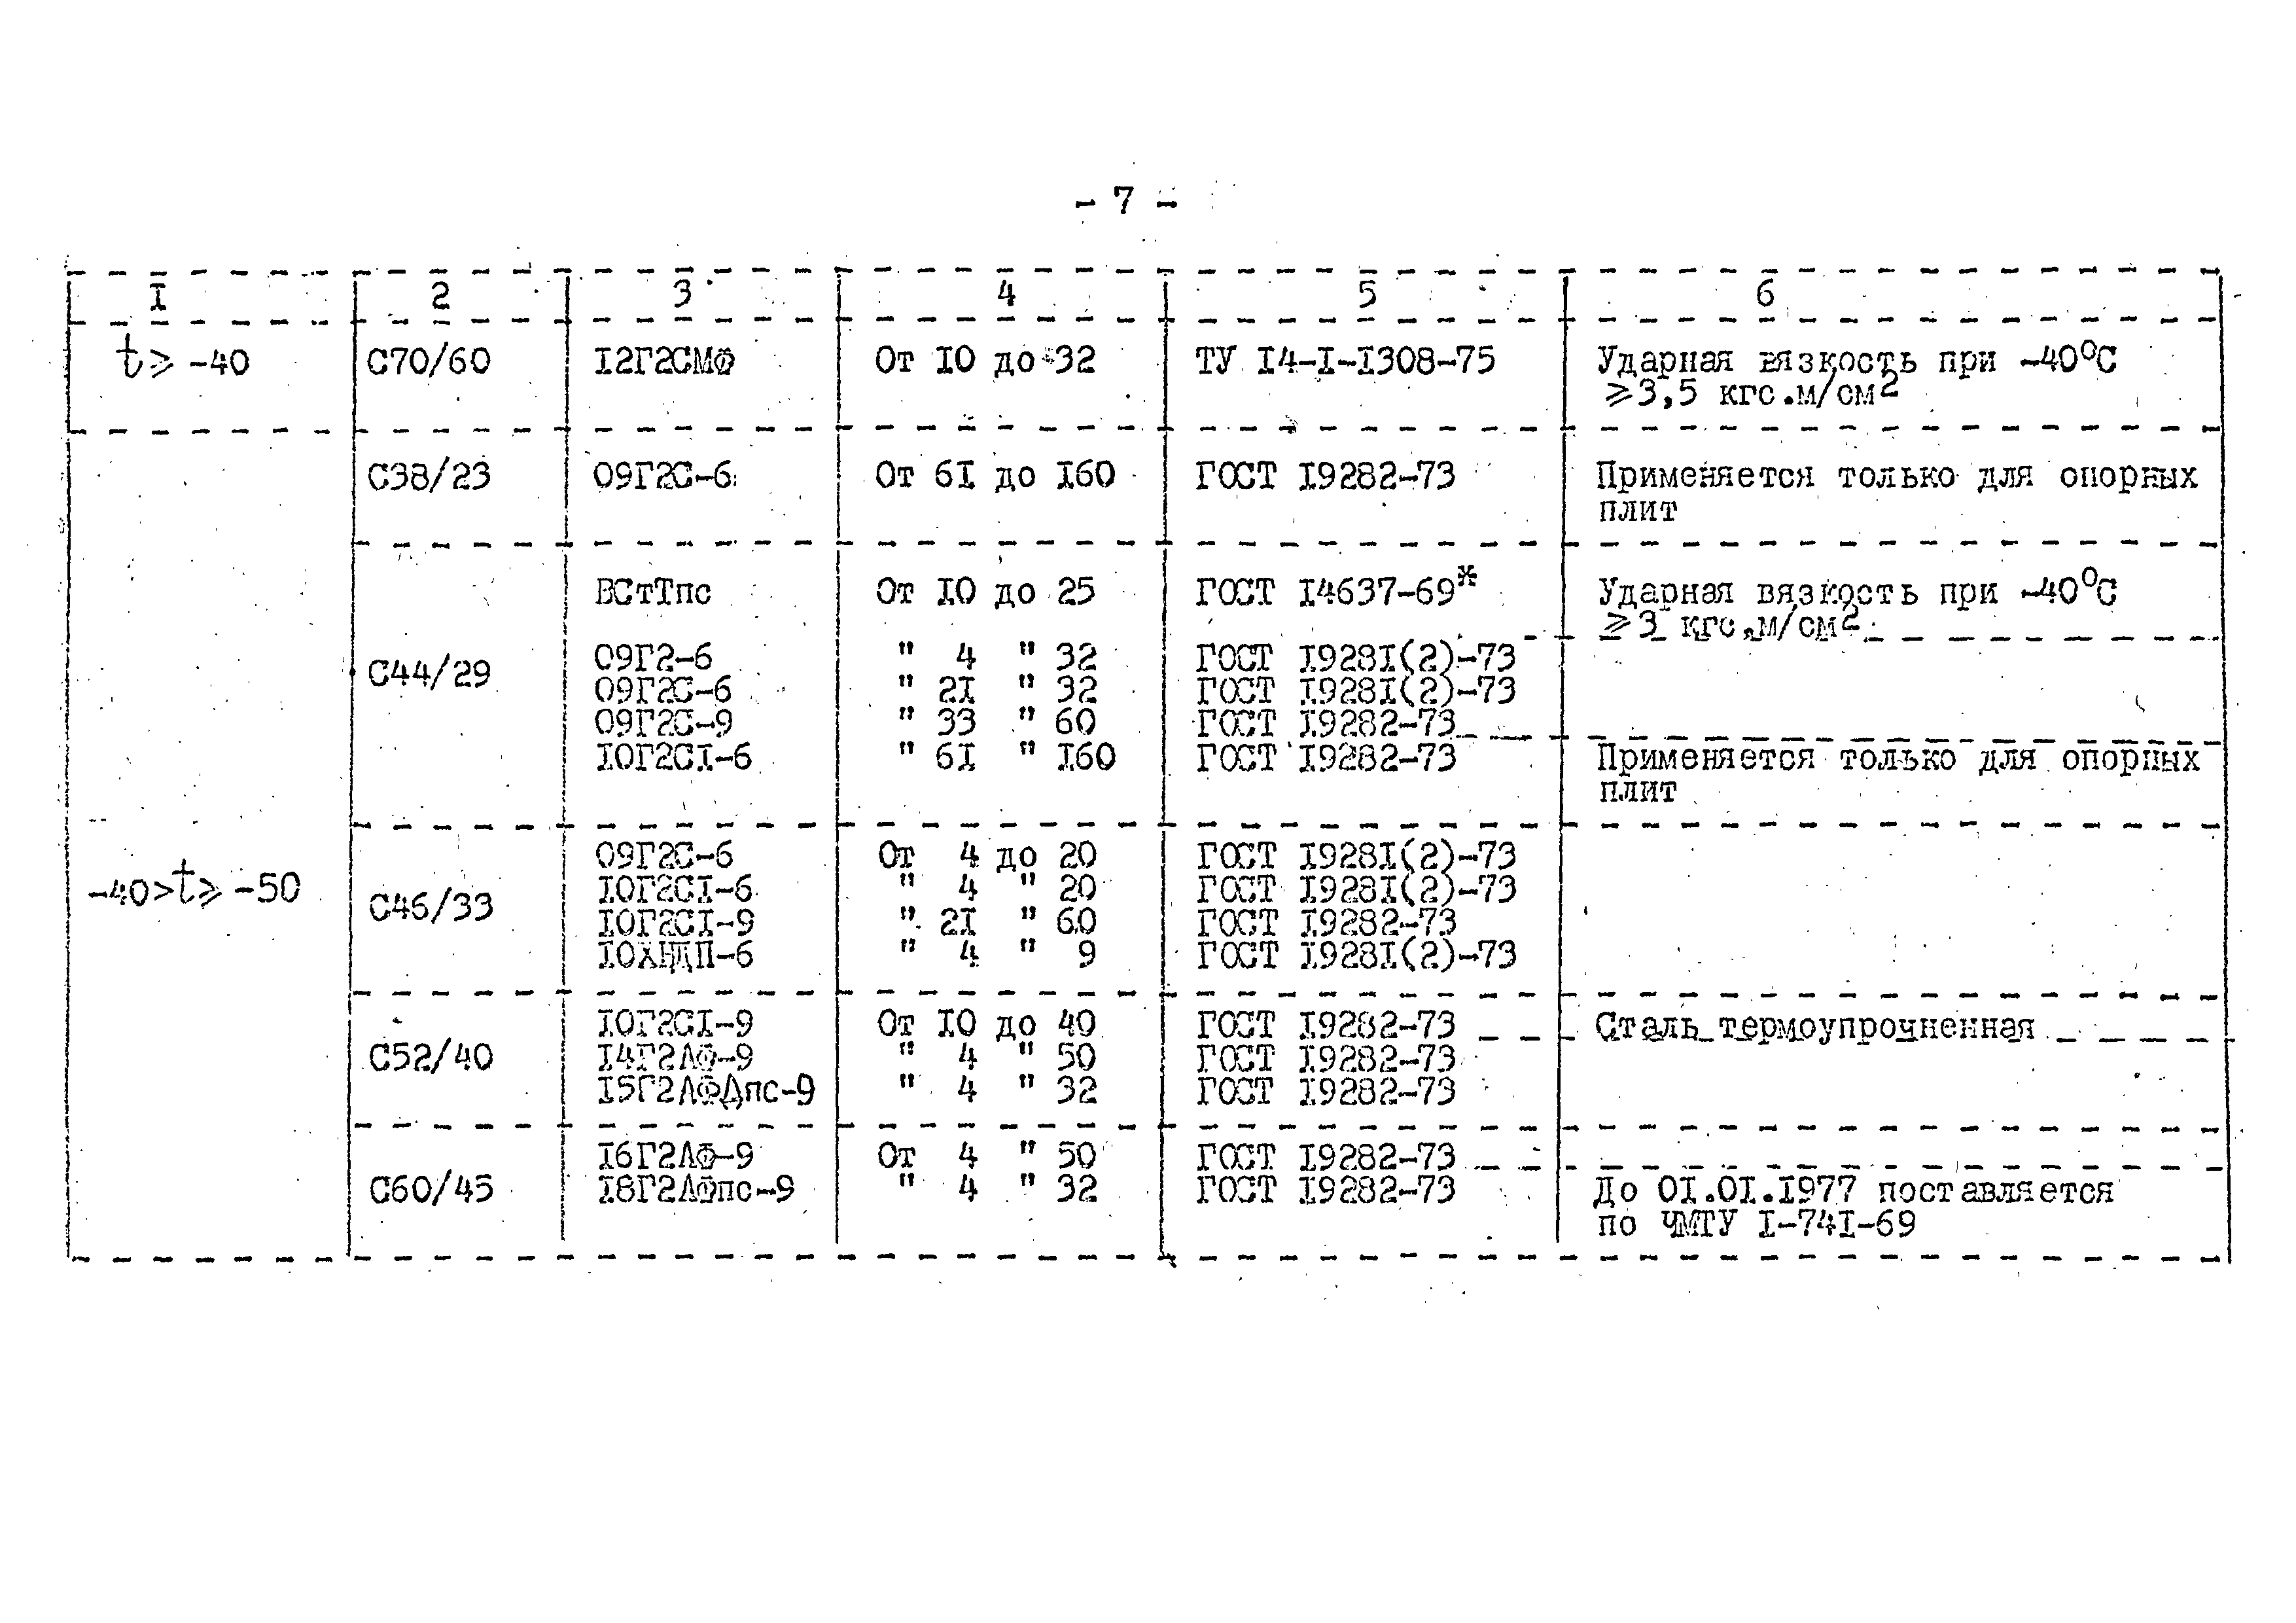 СНиП II-В.3-72